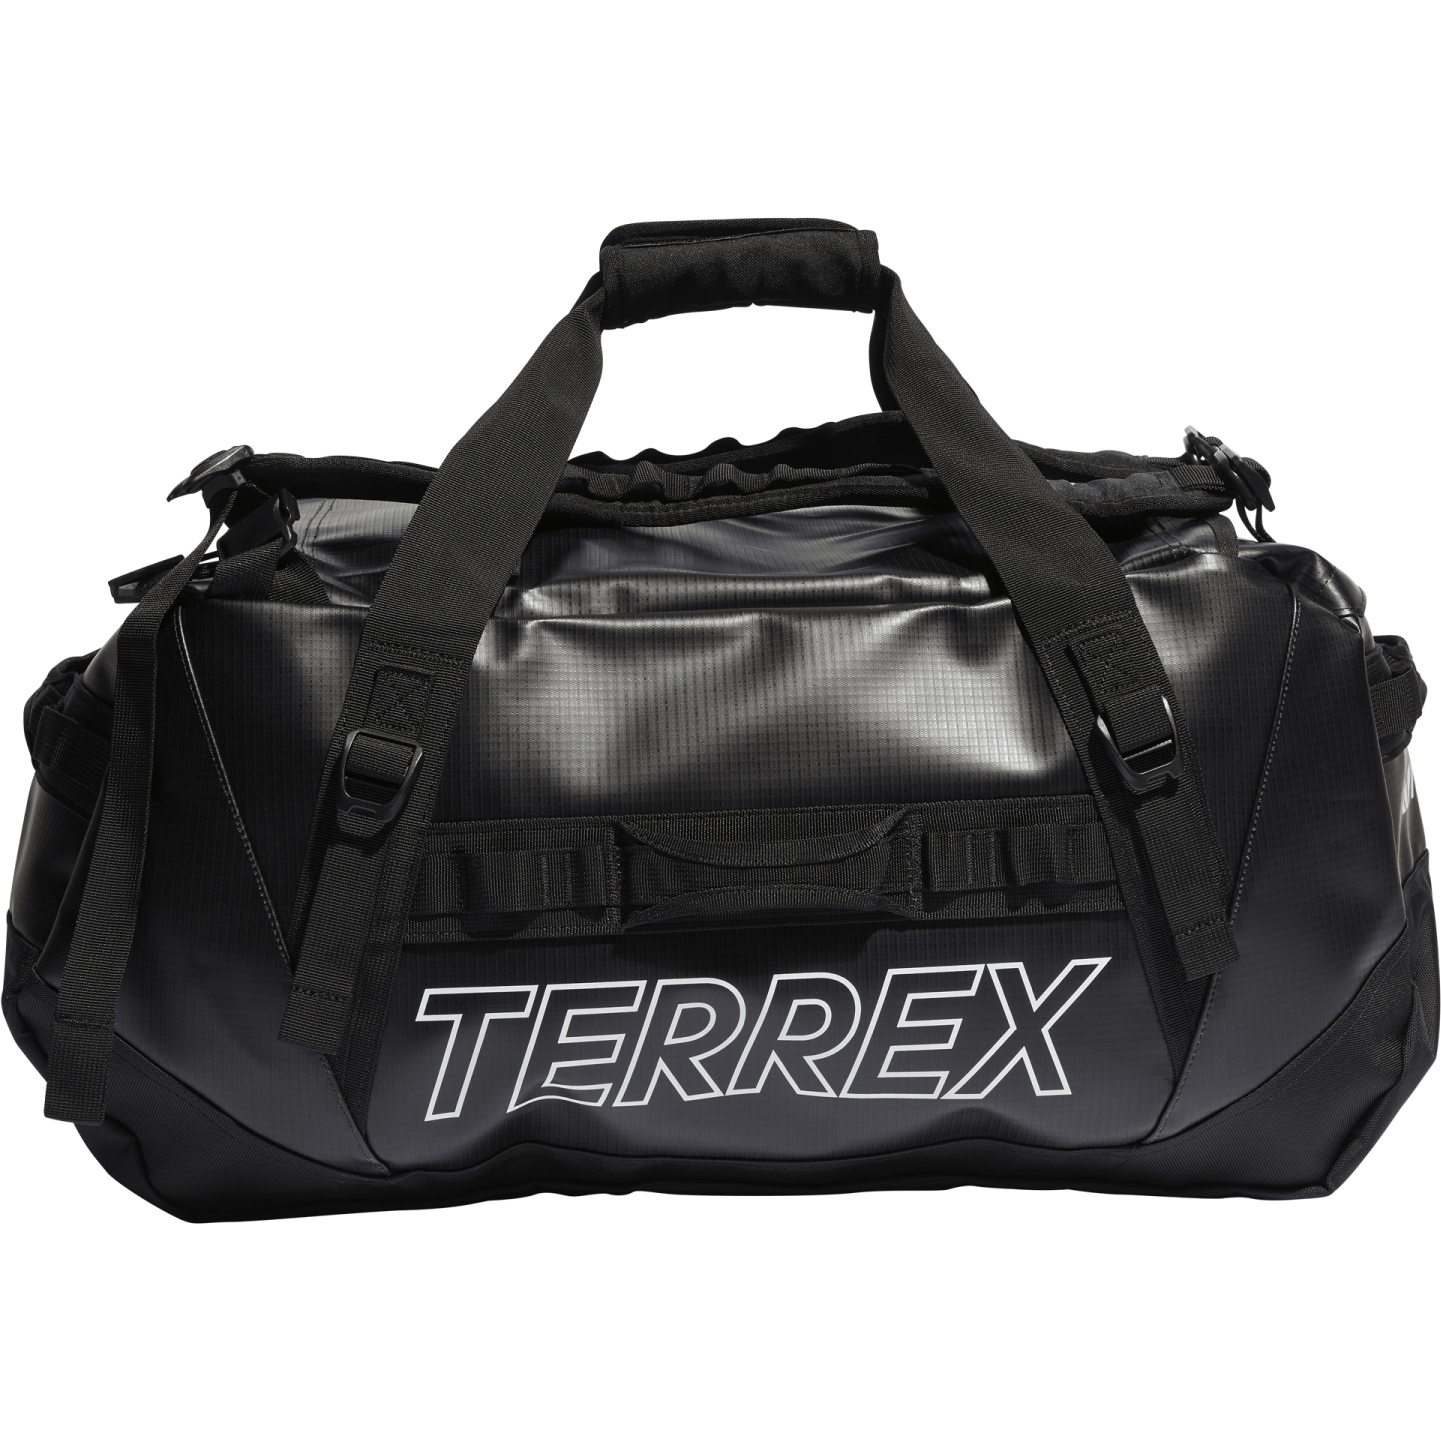 Produktbild von adidas TERREX RAIN.RDY Expedition Duffel Bag M - 70L - schwarz/weiß IC5649